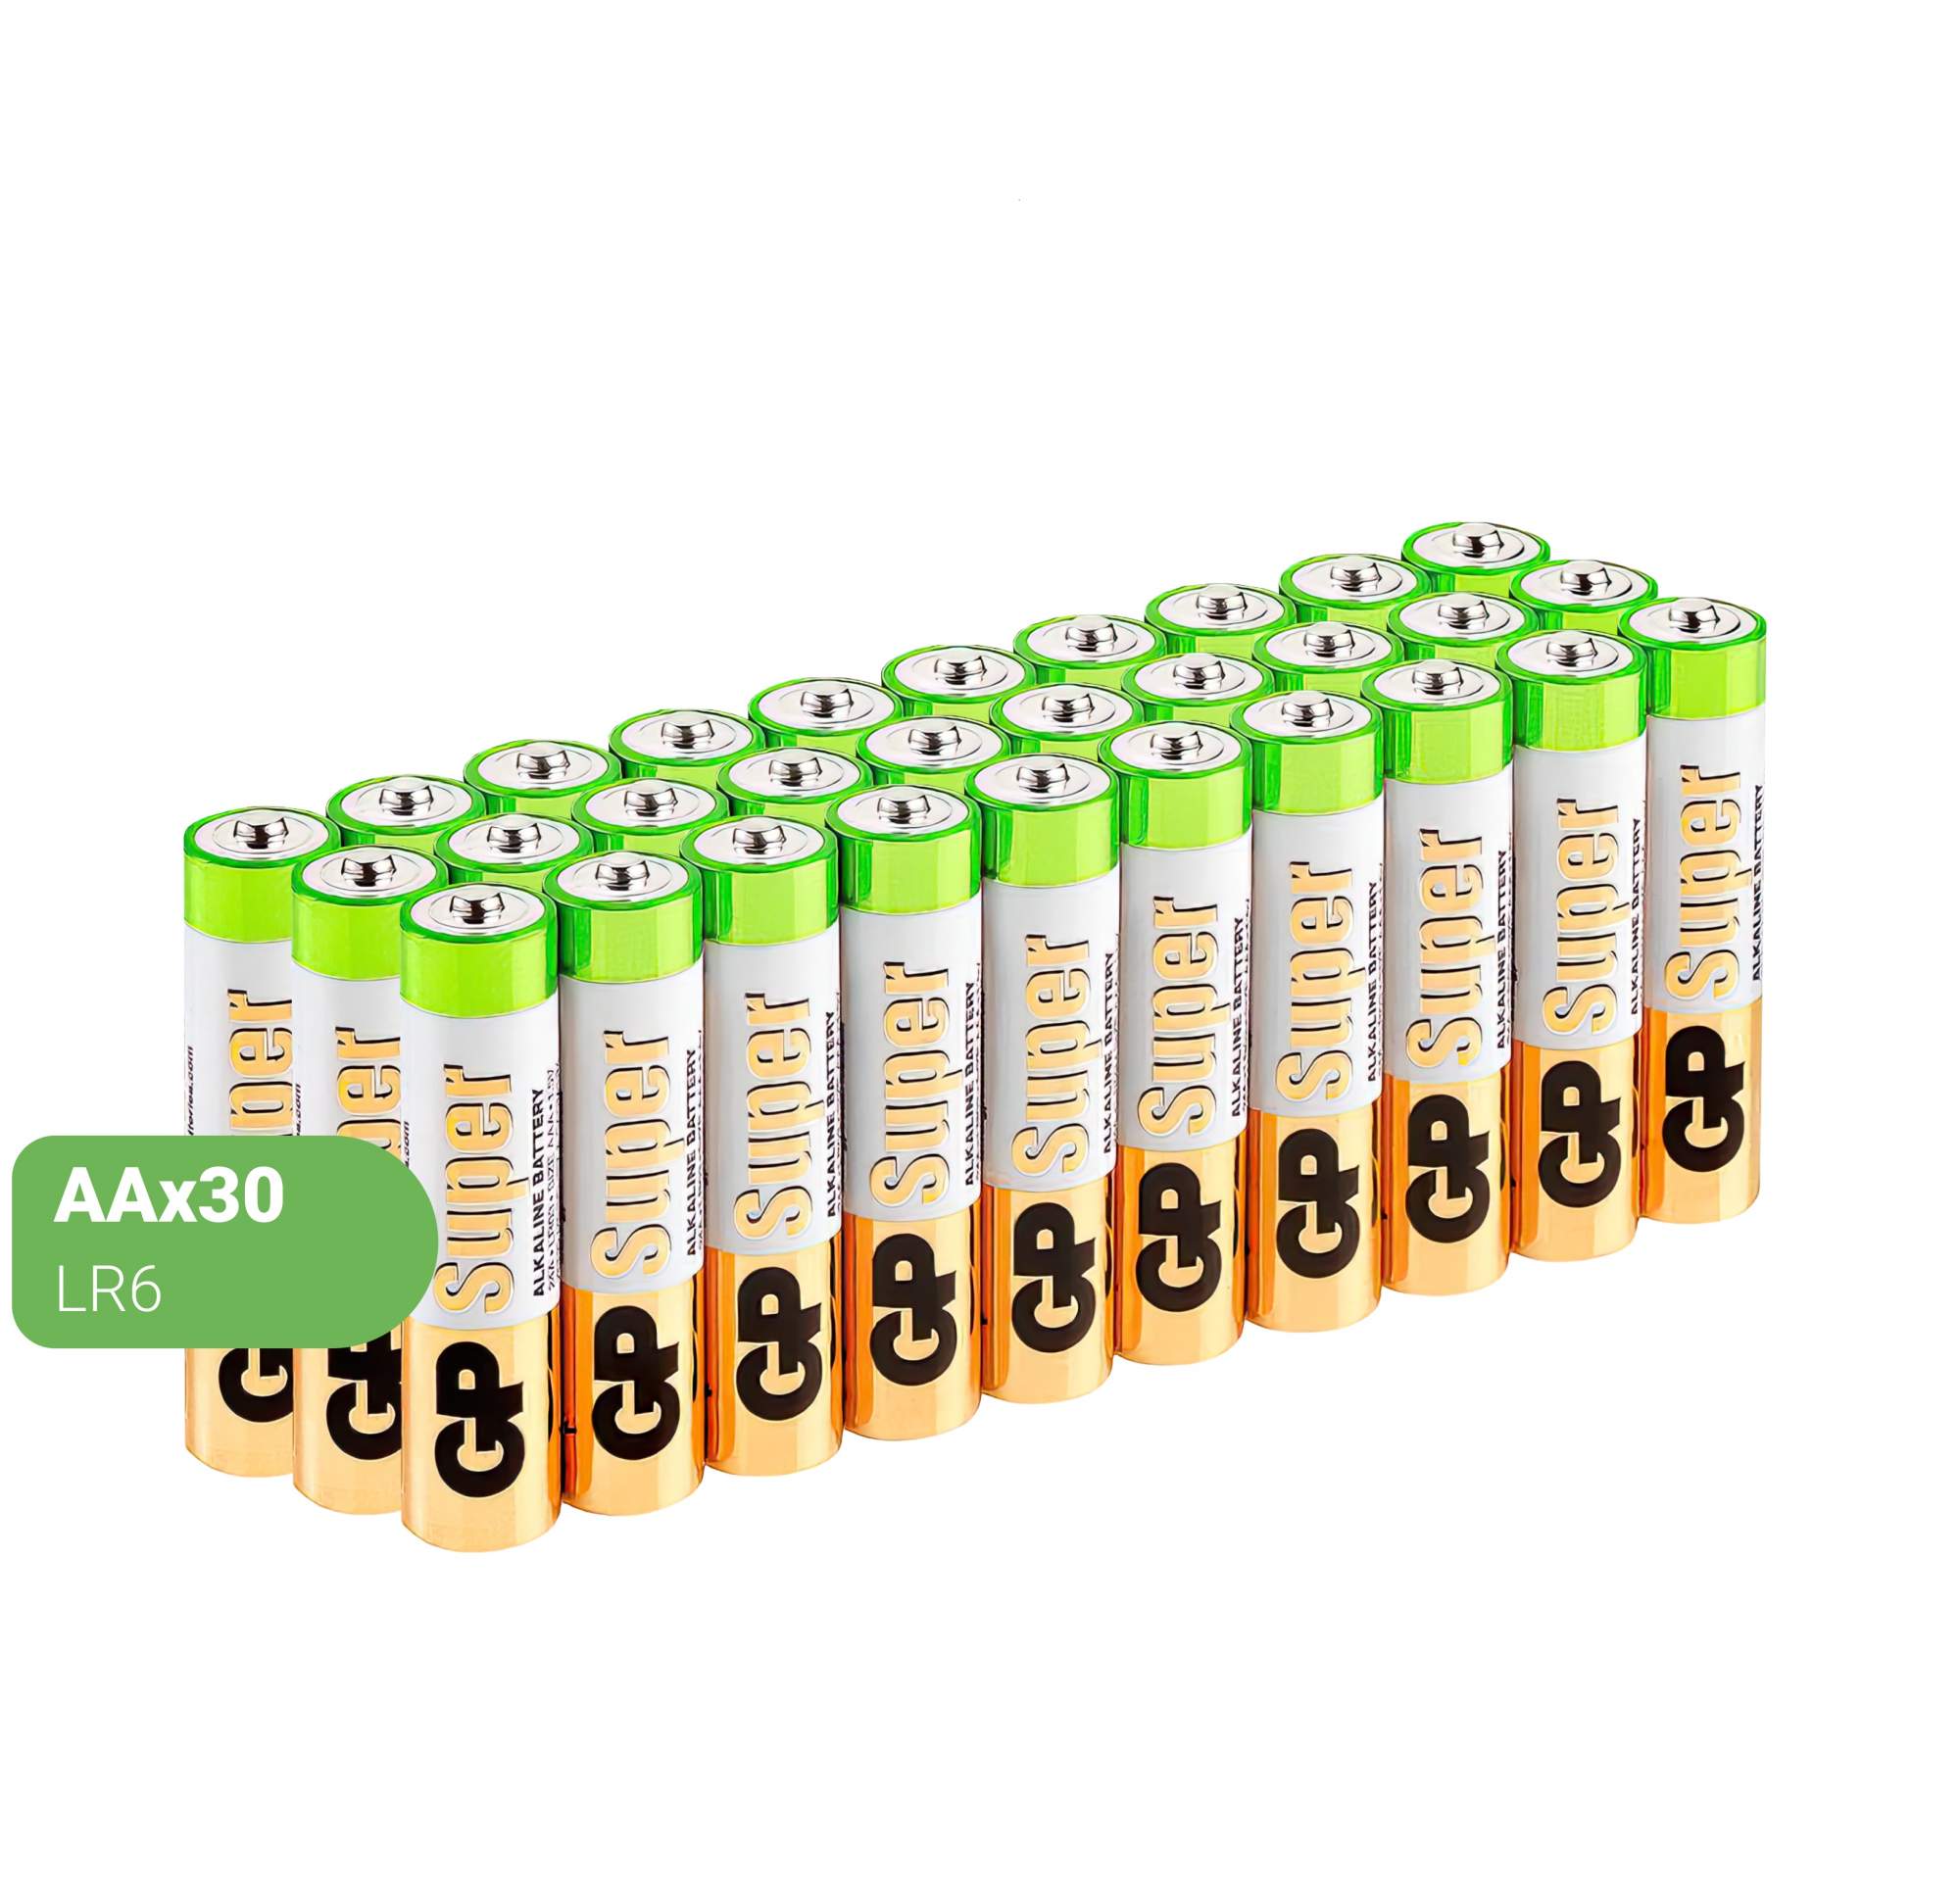 Батарейки GP Batteries Super алкалиновые, АА, 30 шт - купить в Москве, цены на Мегамаркет | 600000141524